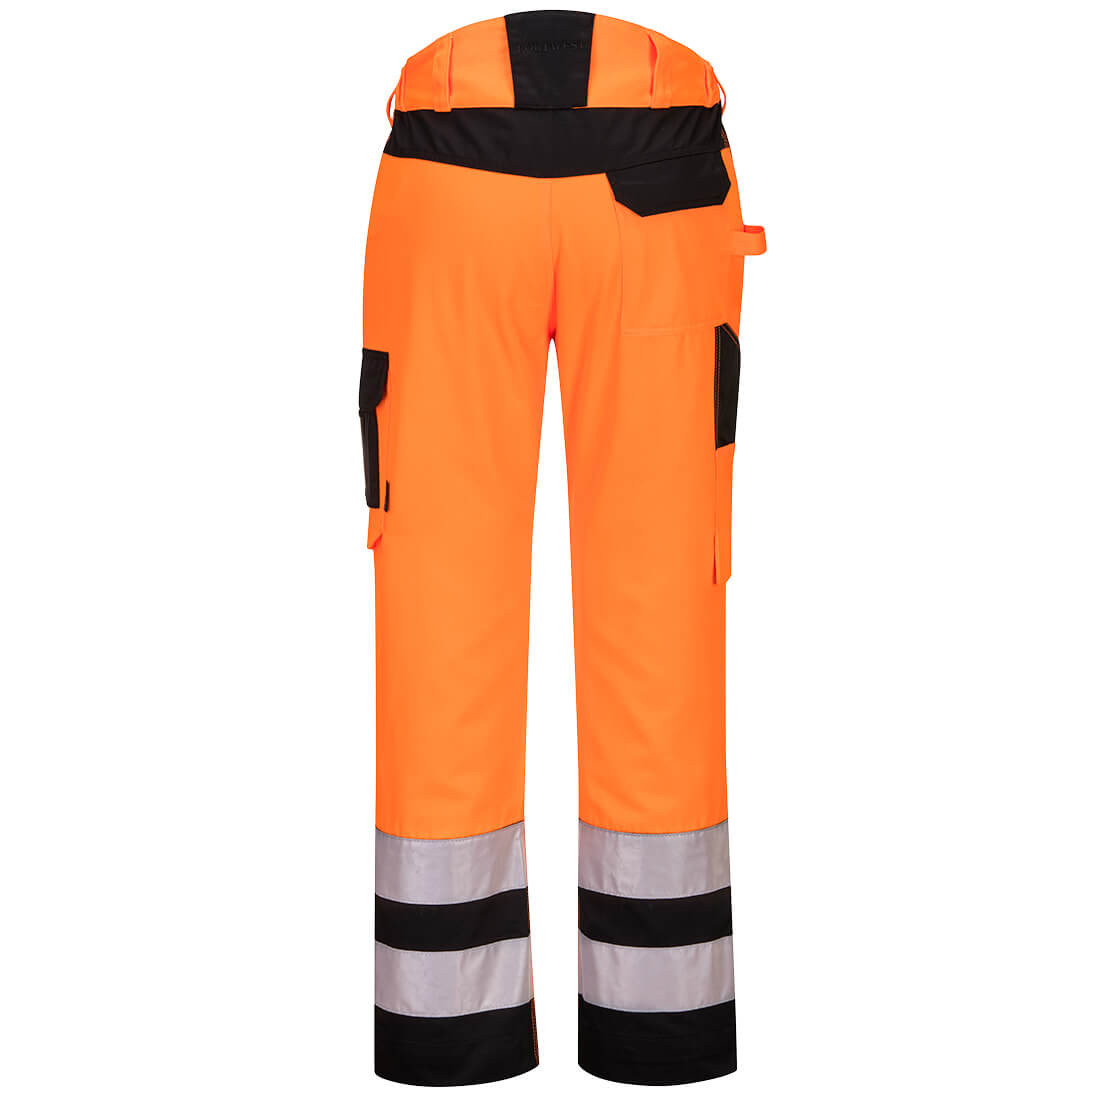 PW2 Pantaloni service ad alta visibilità - Abbigliamento di protezione